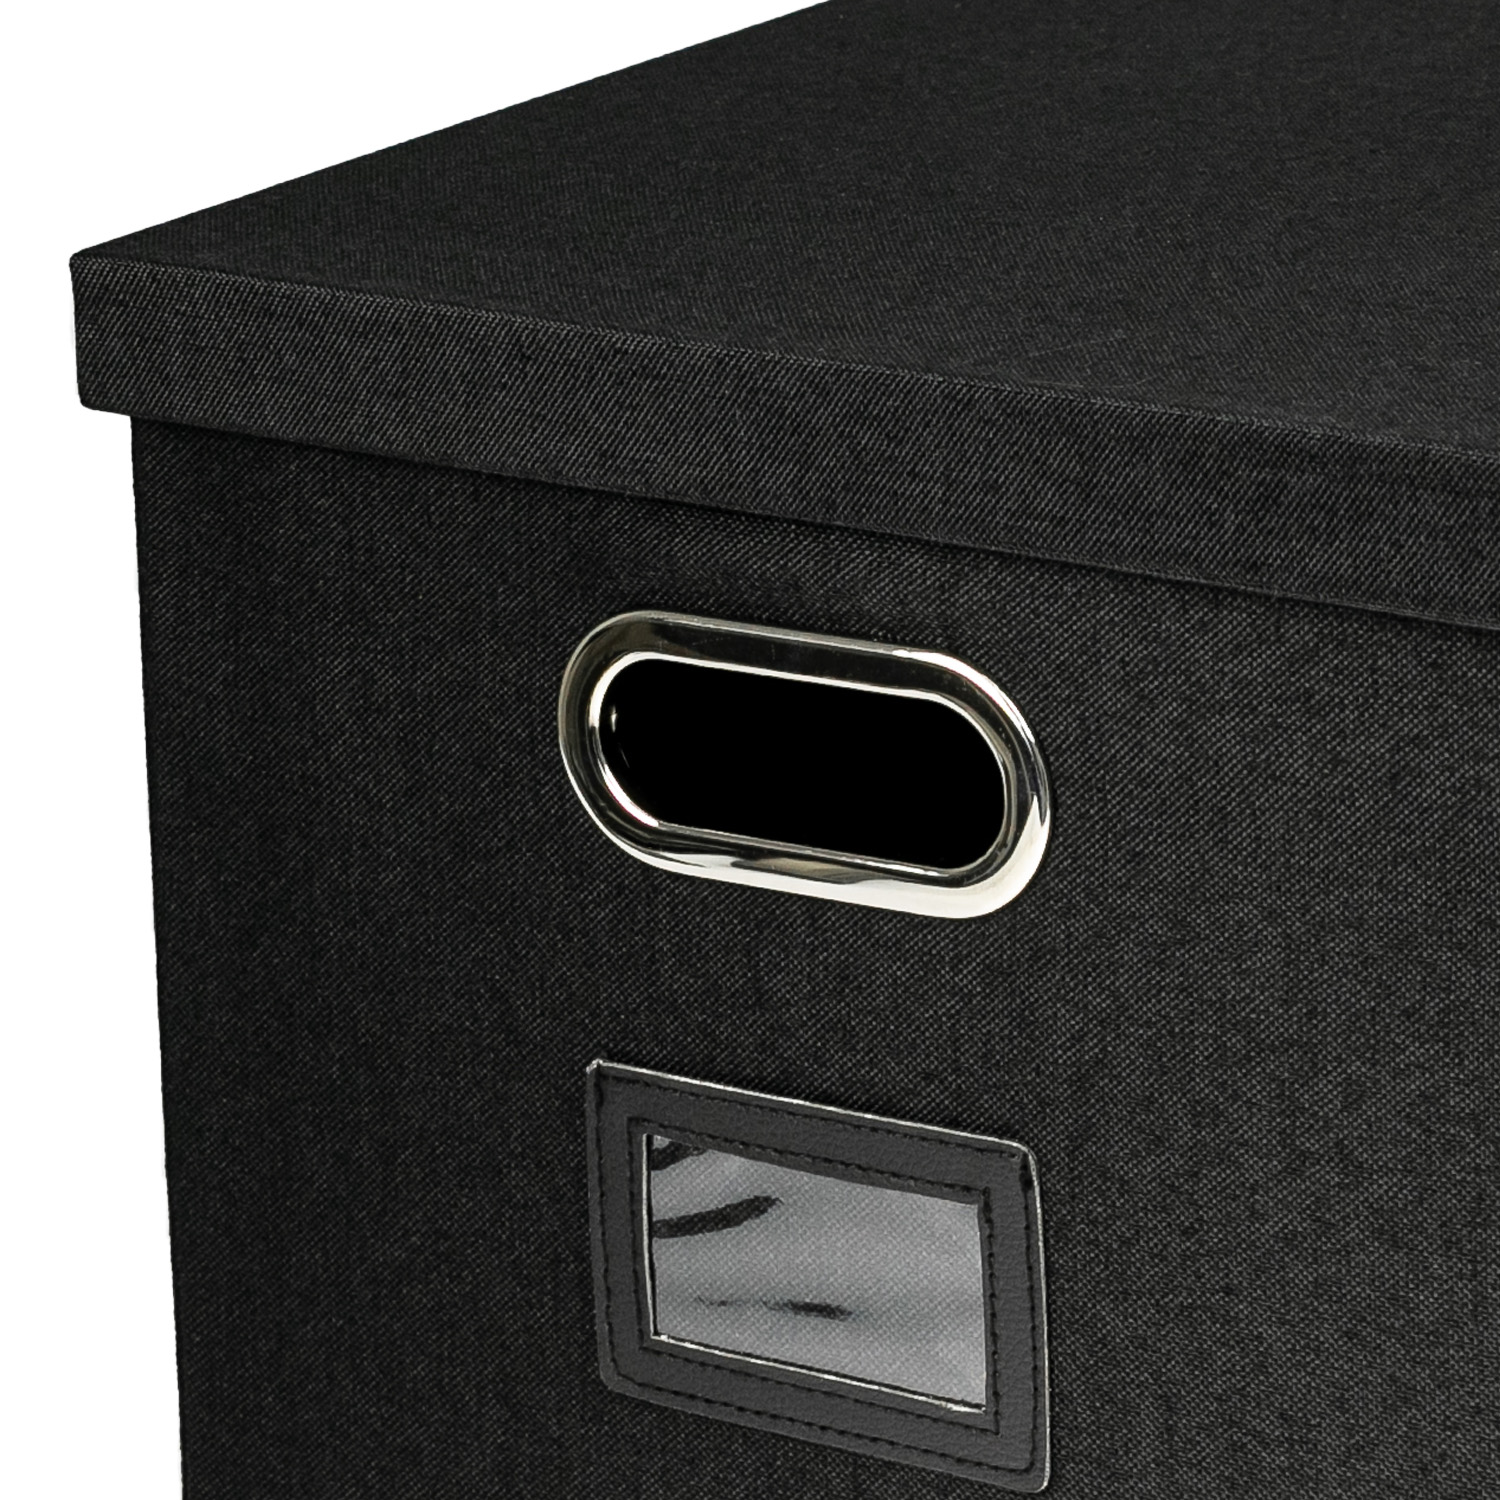 Aufbewahrungsbox für Hängeregister passend für Kallax im DIN A4 Format in Schwarz